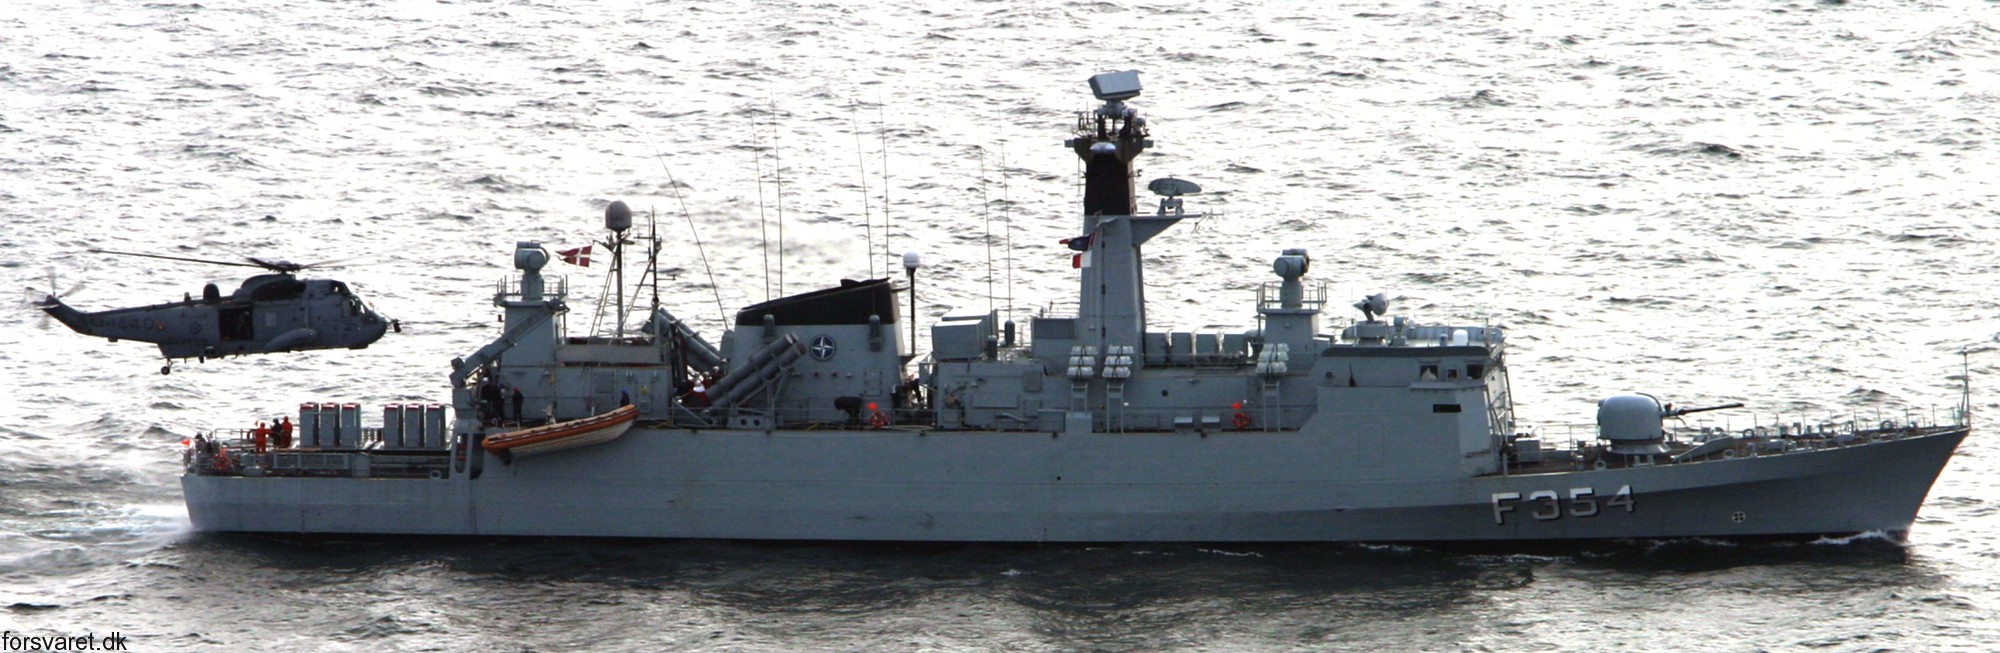 f-354 hdms niels juel class corvette royal danish navy kongelige danske marine kdm 71